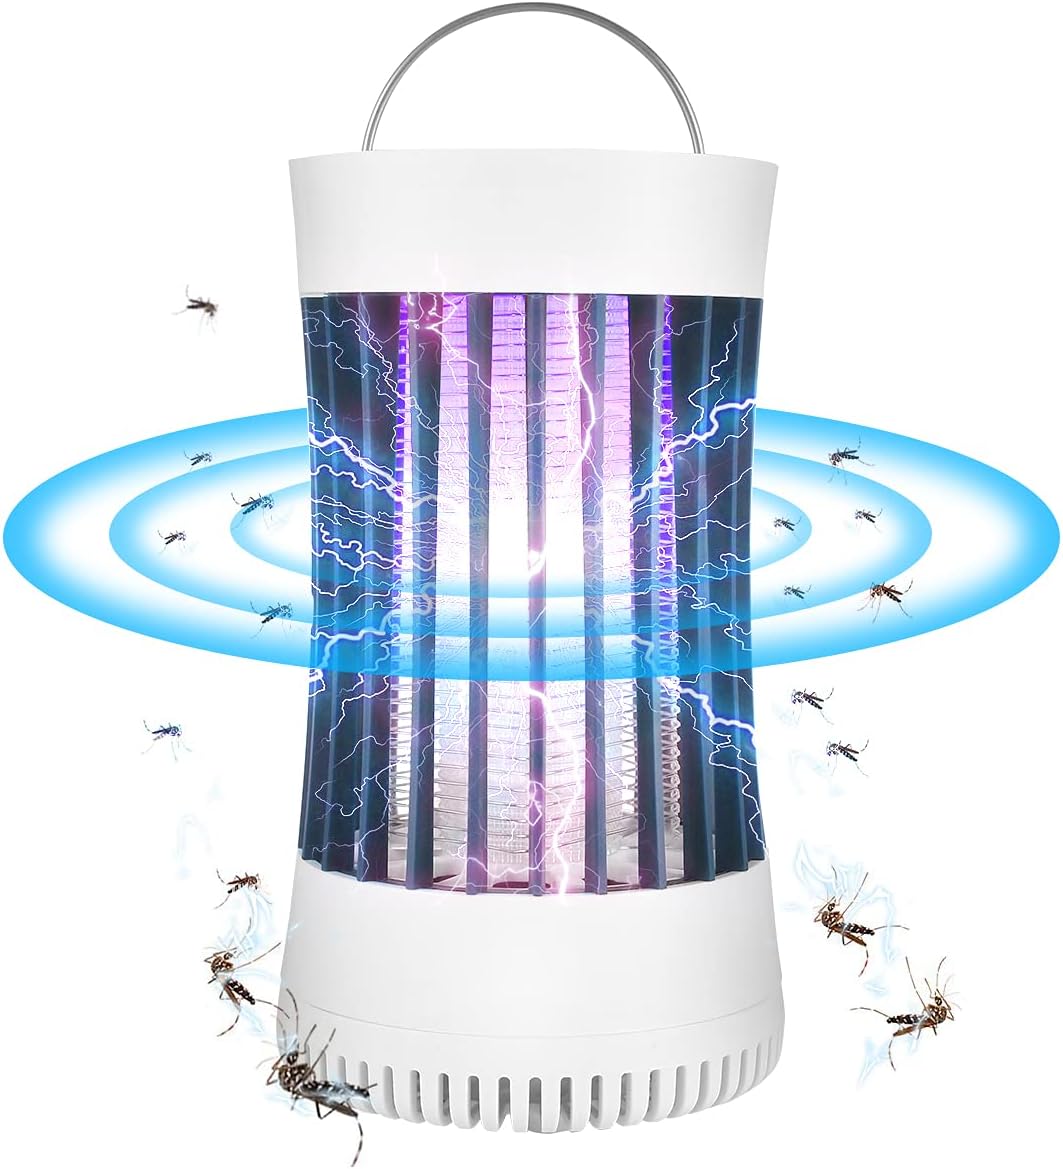 Dubkart Bug Zapper Mosquito Killer Trap Lamp Light